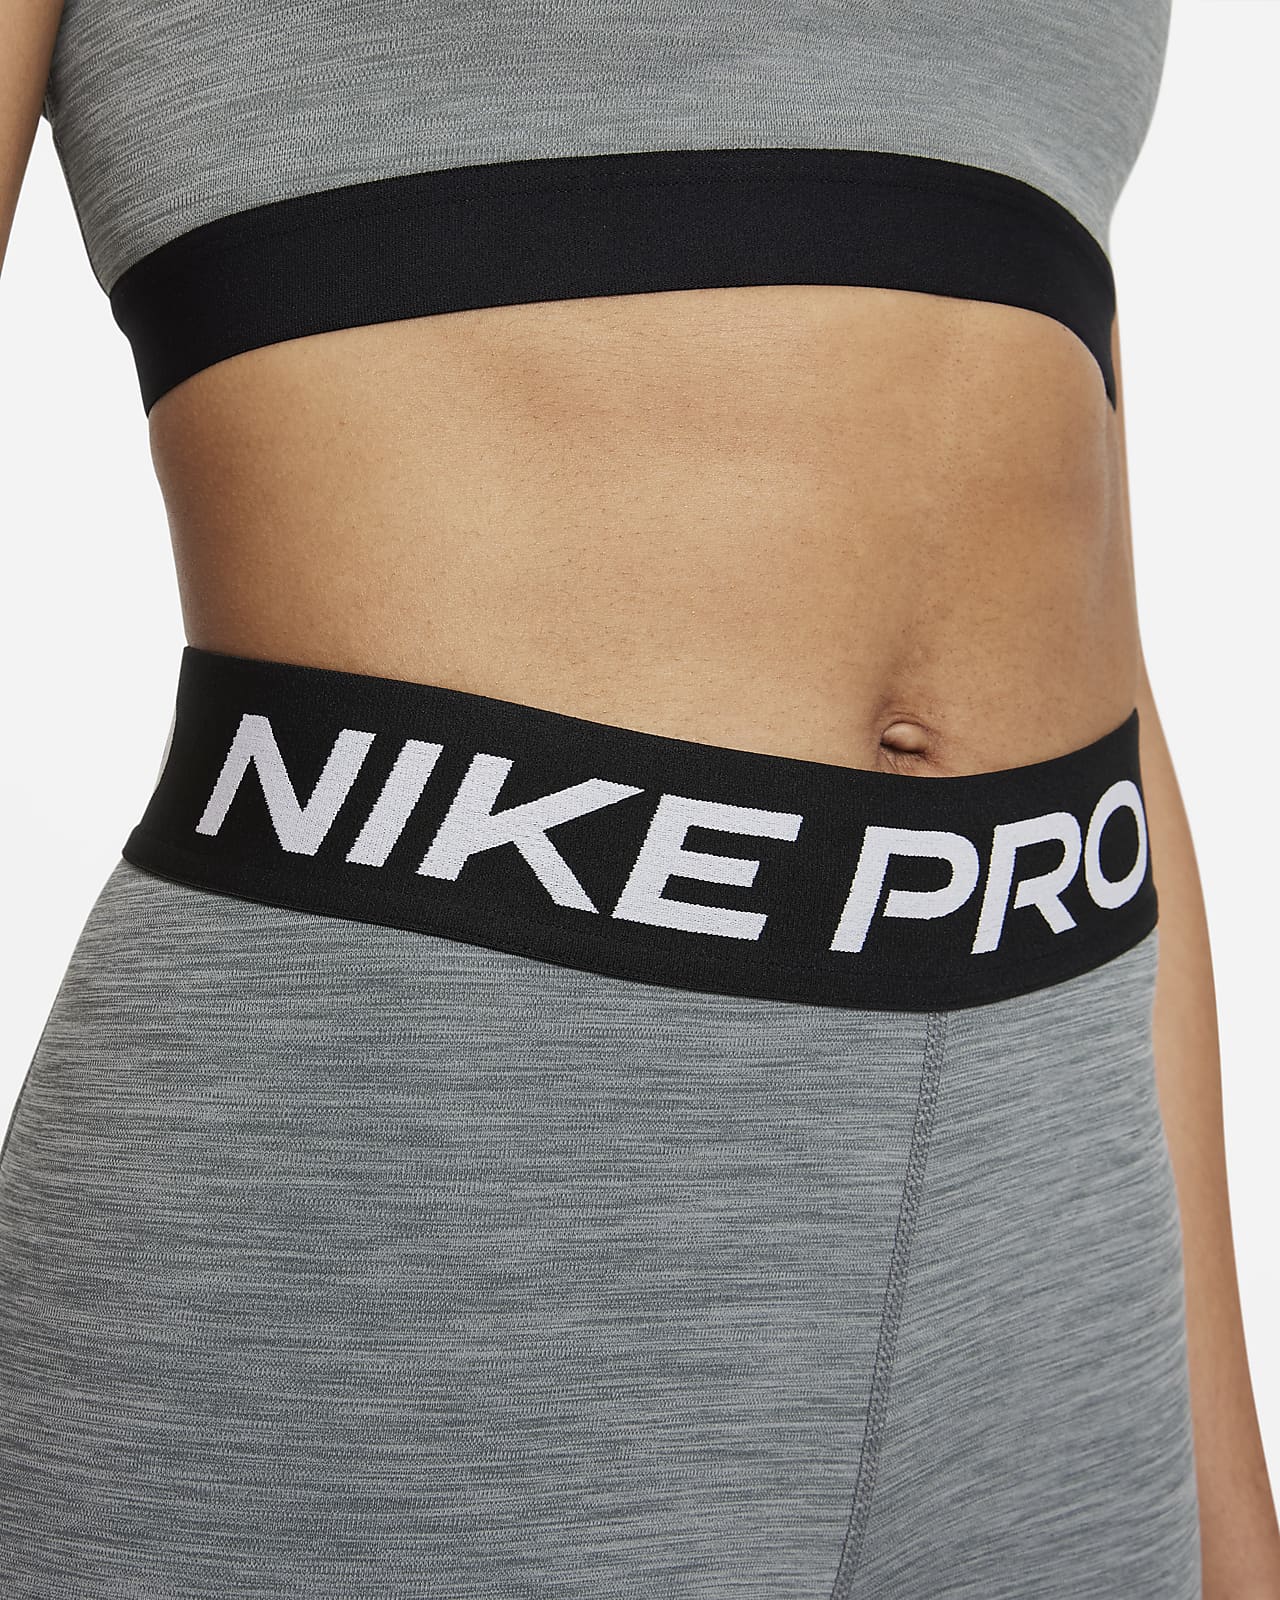 Maniobra informal pellizco Nike Pro 365 Leggings cortos de talle medio con panel de malla - Mujer. Nike  ES